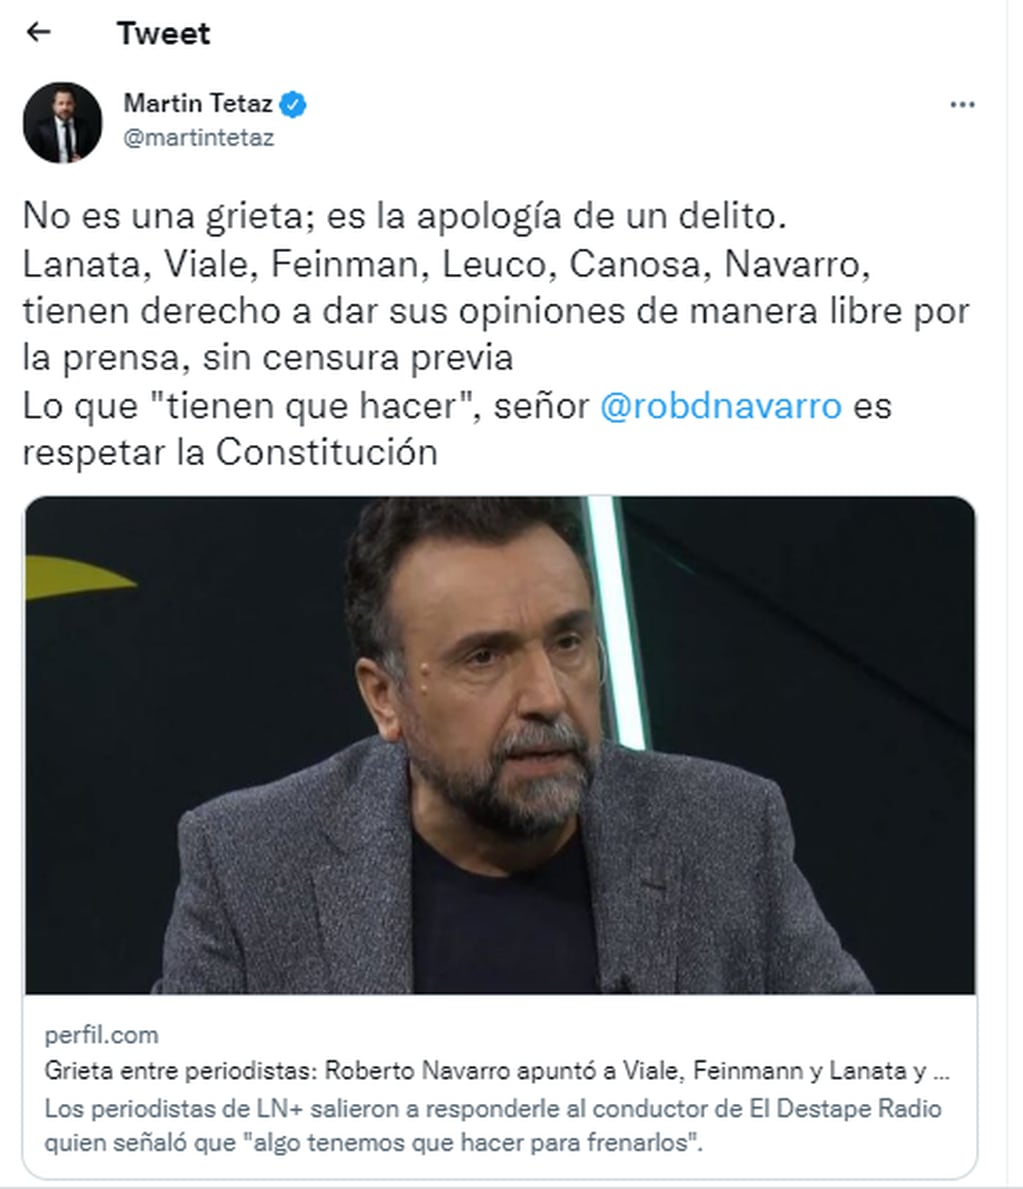 Tras los dichos de Roberto Navarro, Tetaz expresó su repudio sobre las declaraciones y apoyaron a los periodistas señalados.